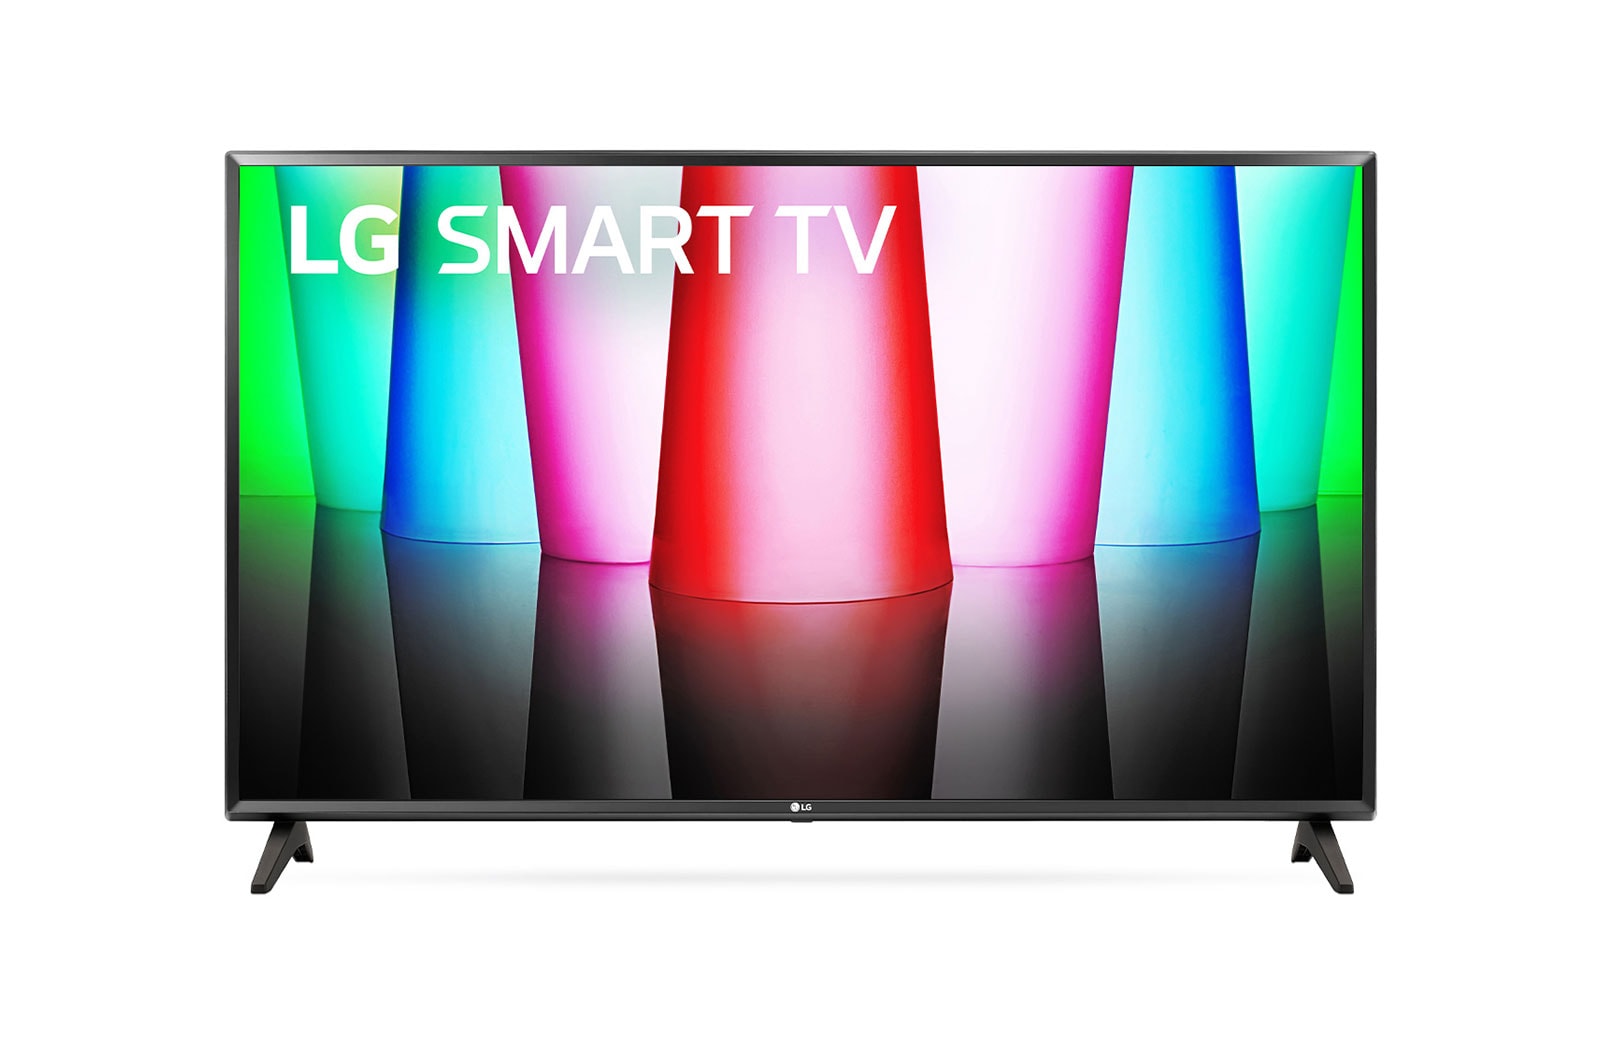 LG Tivi LG FHD LQ576B 32 inch Smart TV | 32LQ576B, 32LQ576BPSA